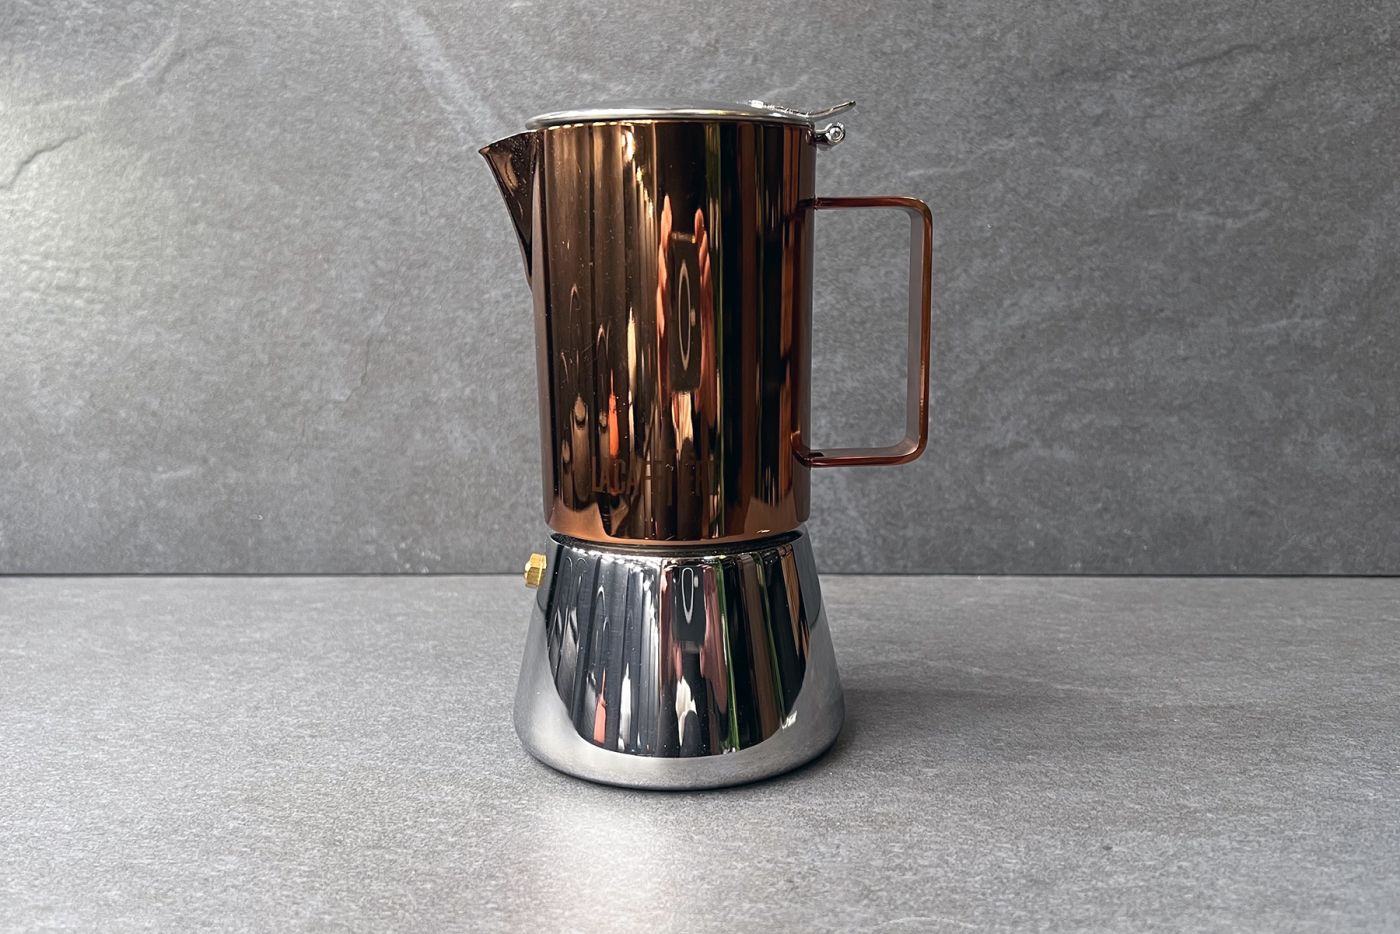 Copper & Chrome Stovetop Espresso Maker